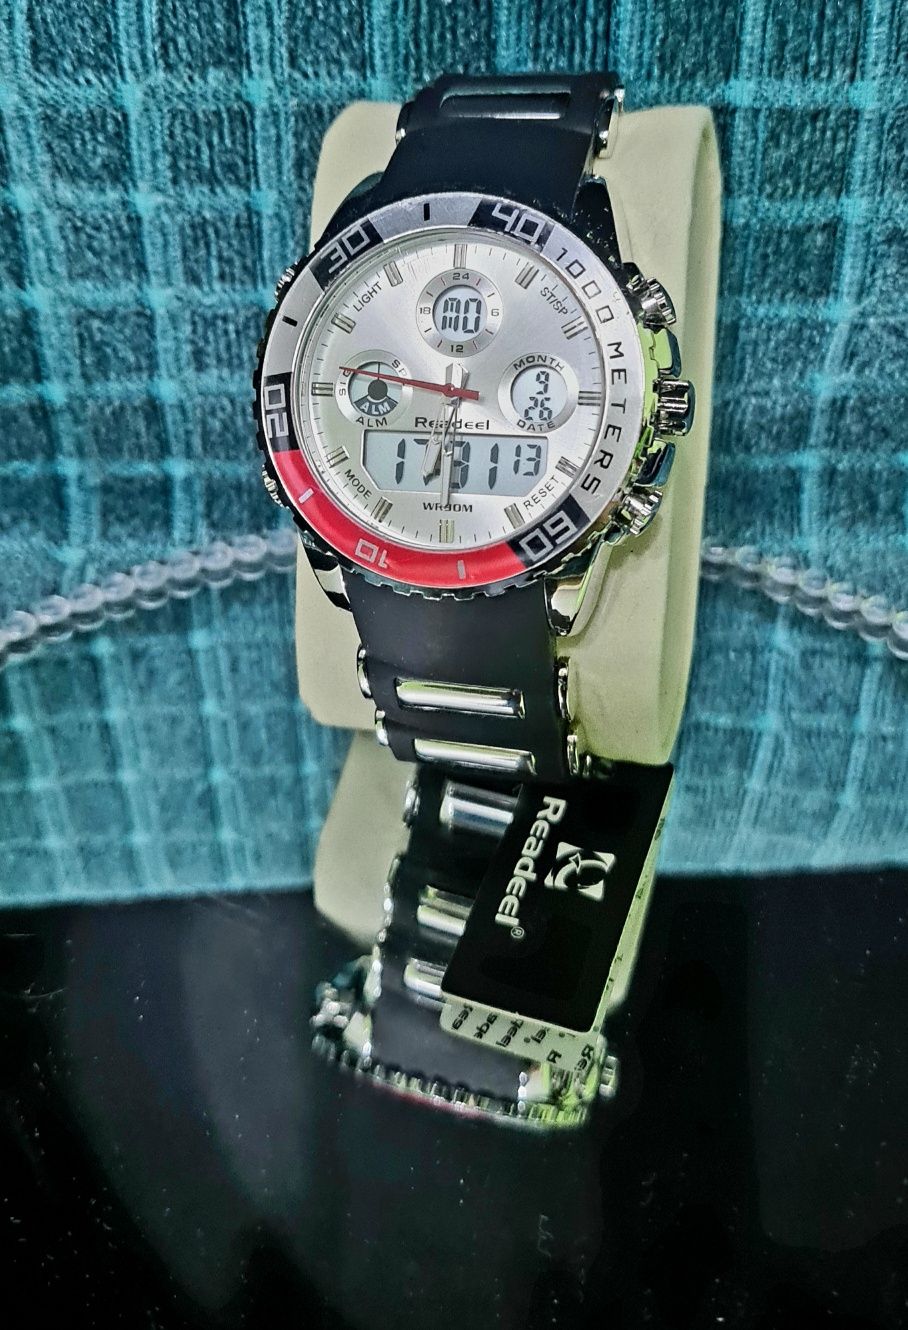 Zegarek firmy Readel